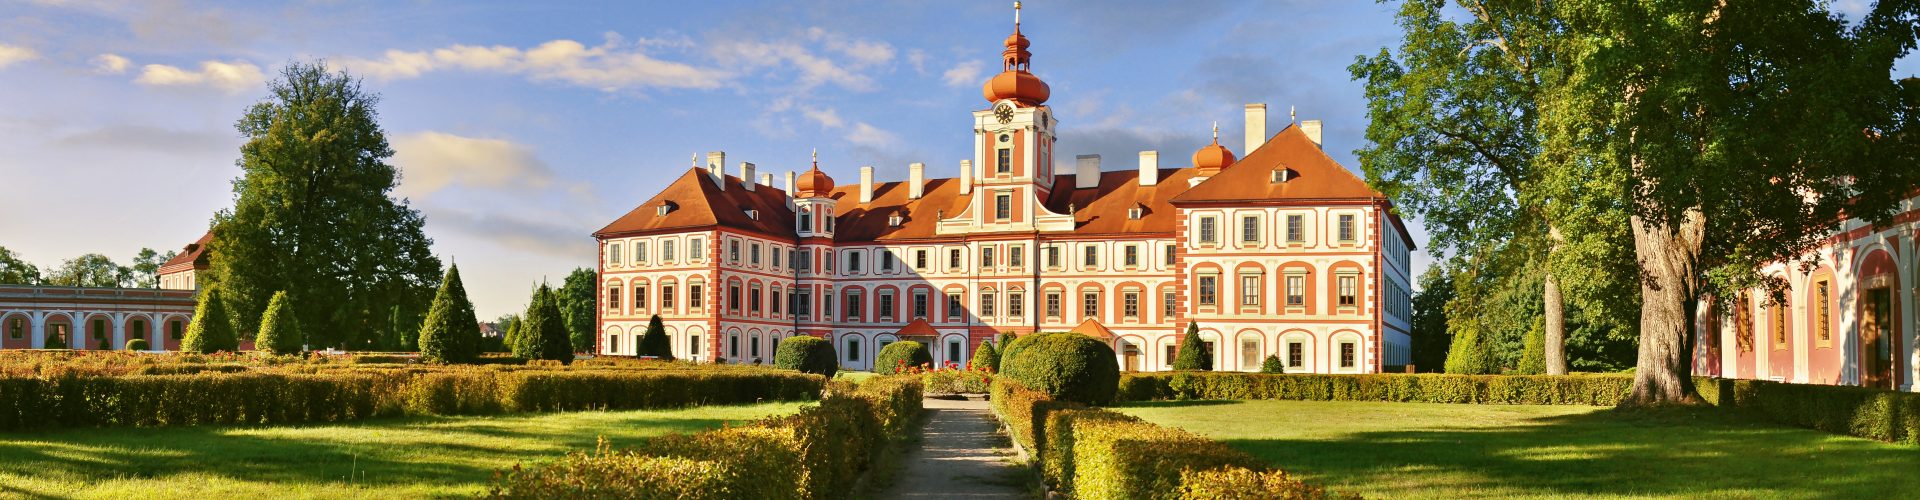 Mnichovo Hradiště Château